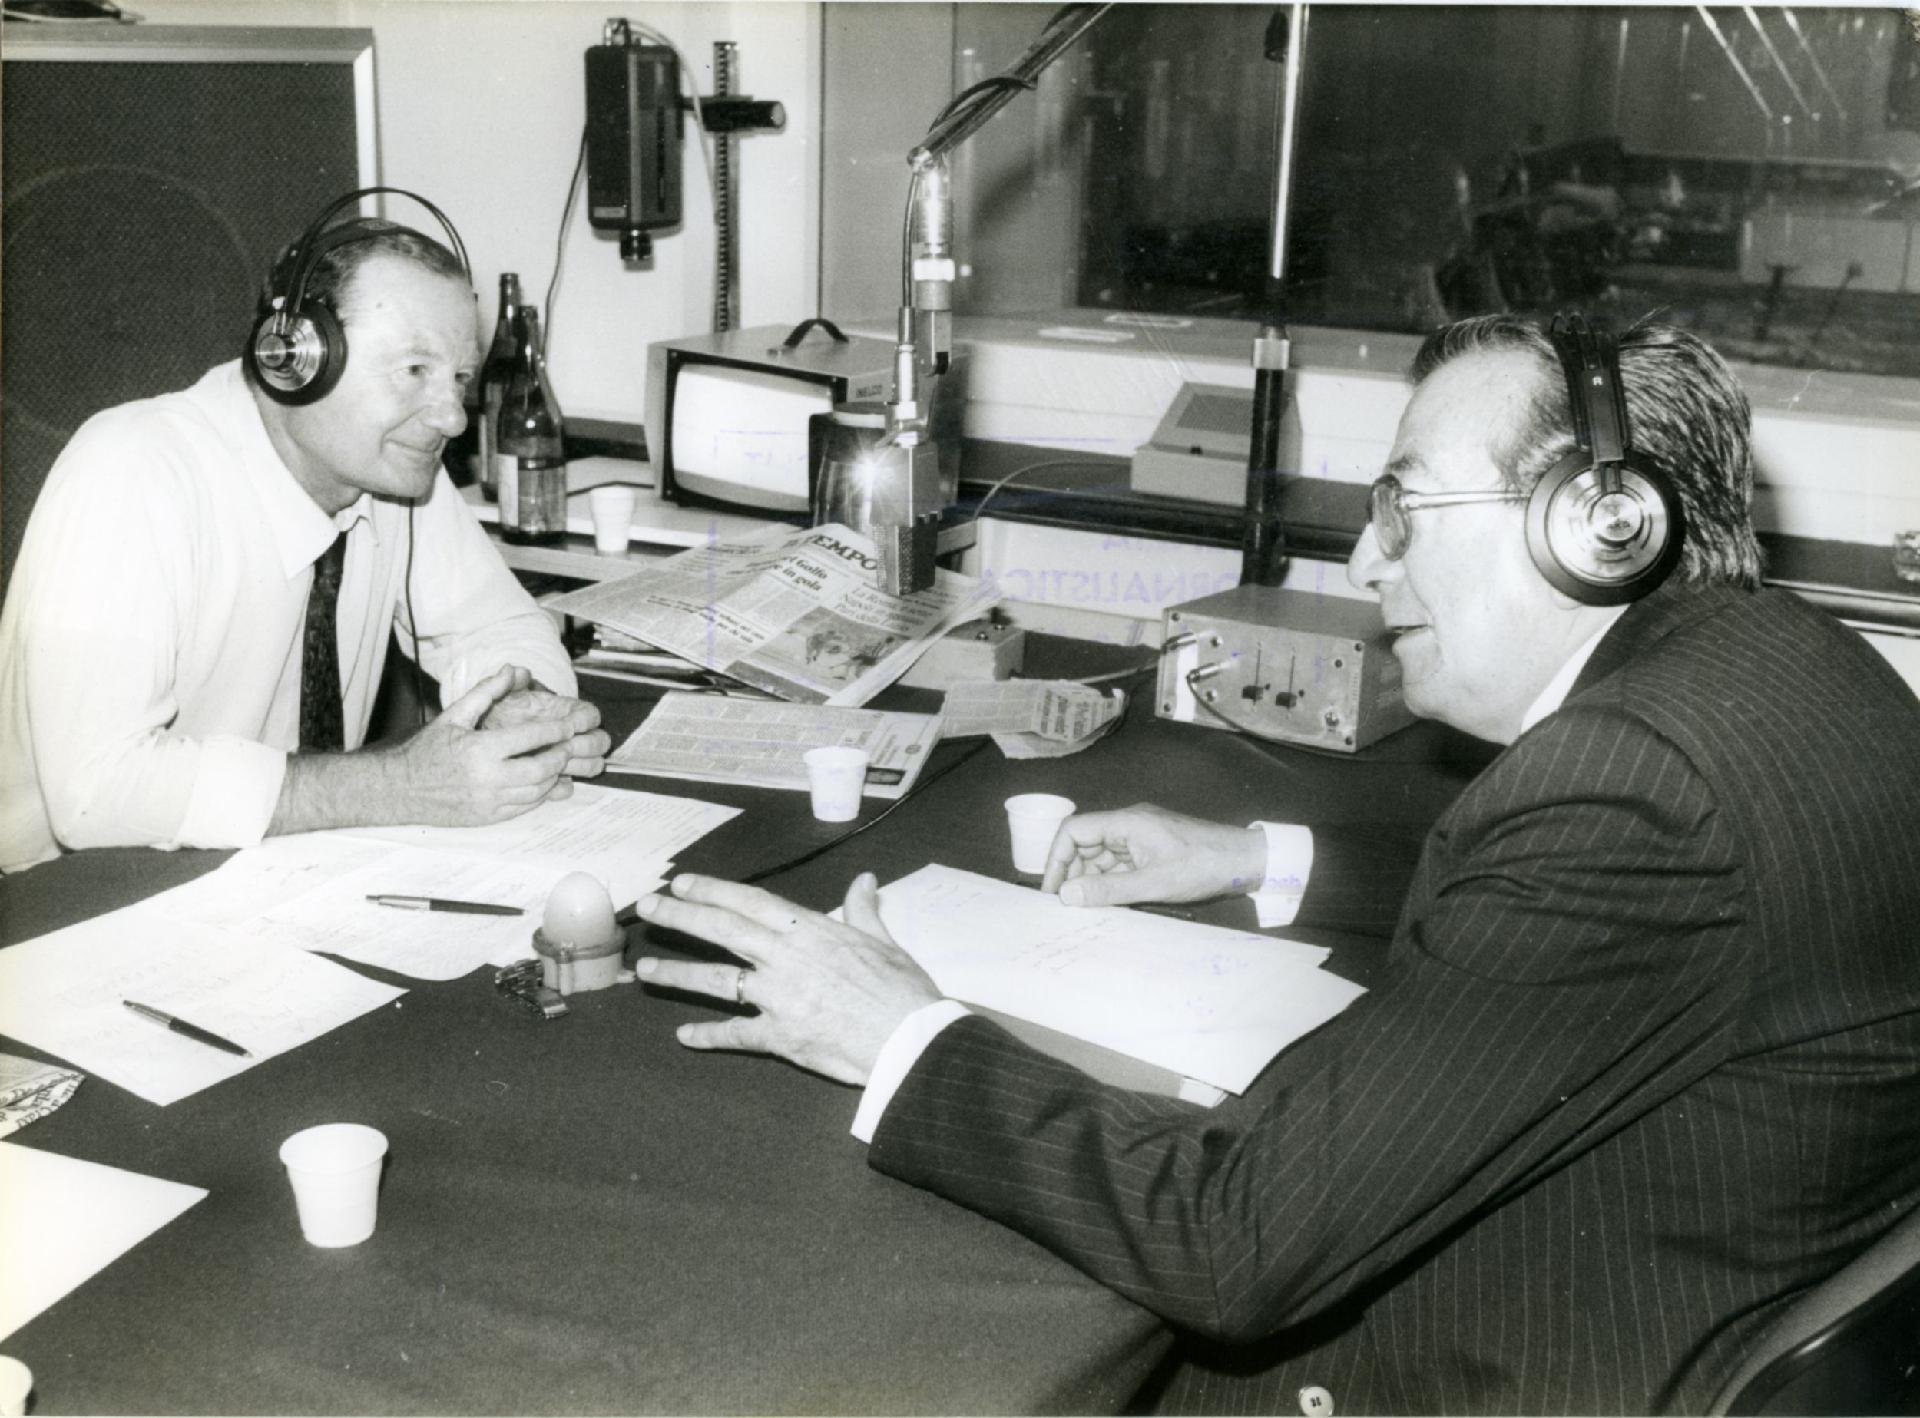 Gianni Bisiach con Giulio Andreotti a &quot;Radio anch&apos;io&quot; nello studio 8 di via Asiago n. 10 a Roma nel 1984